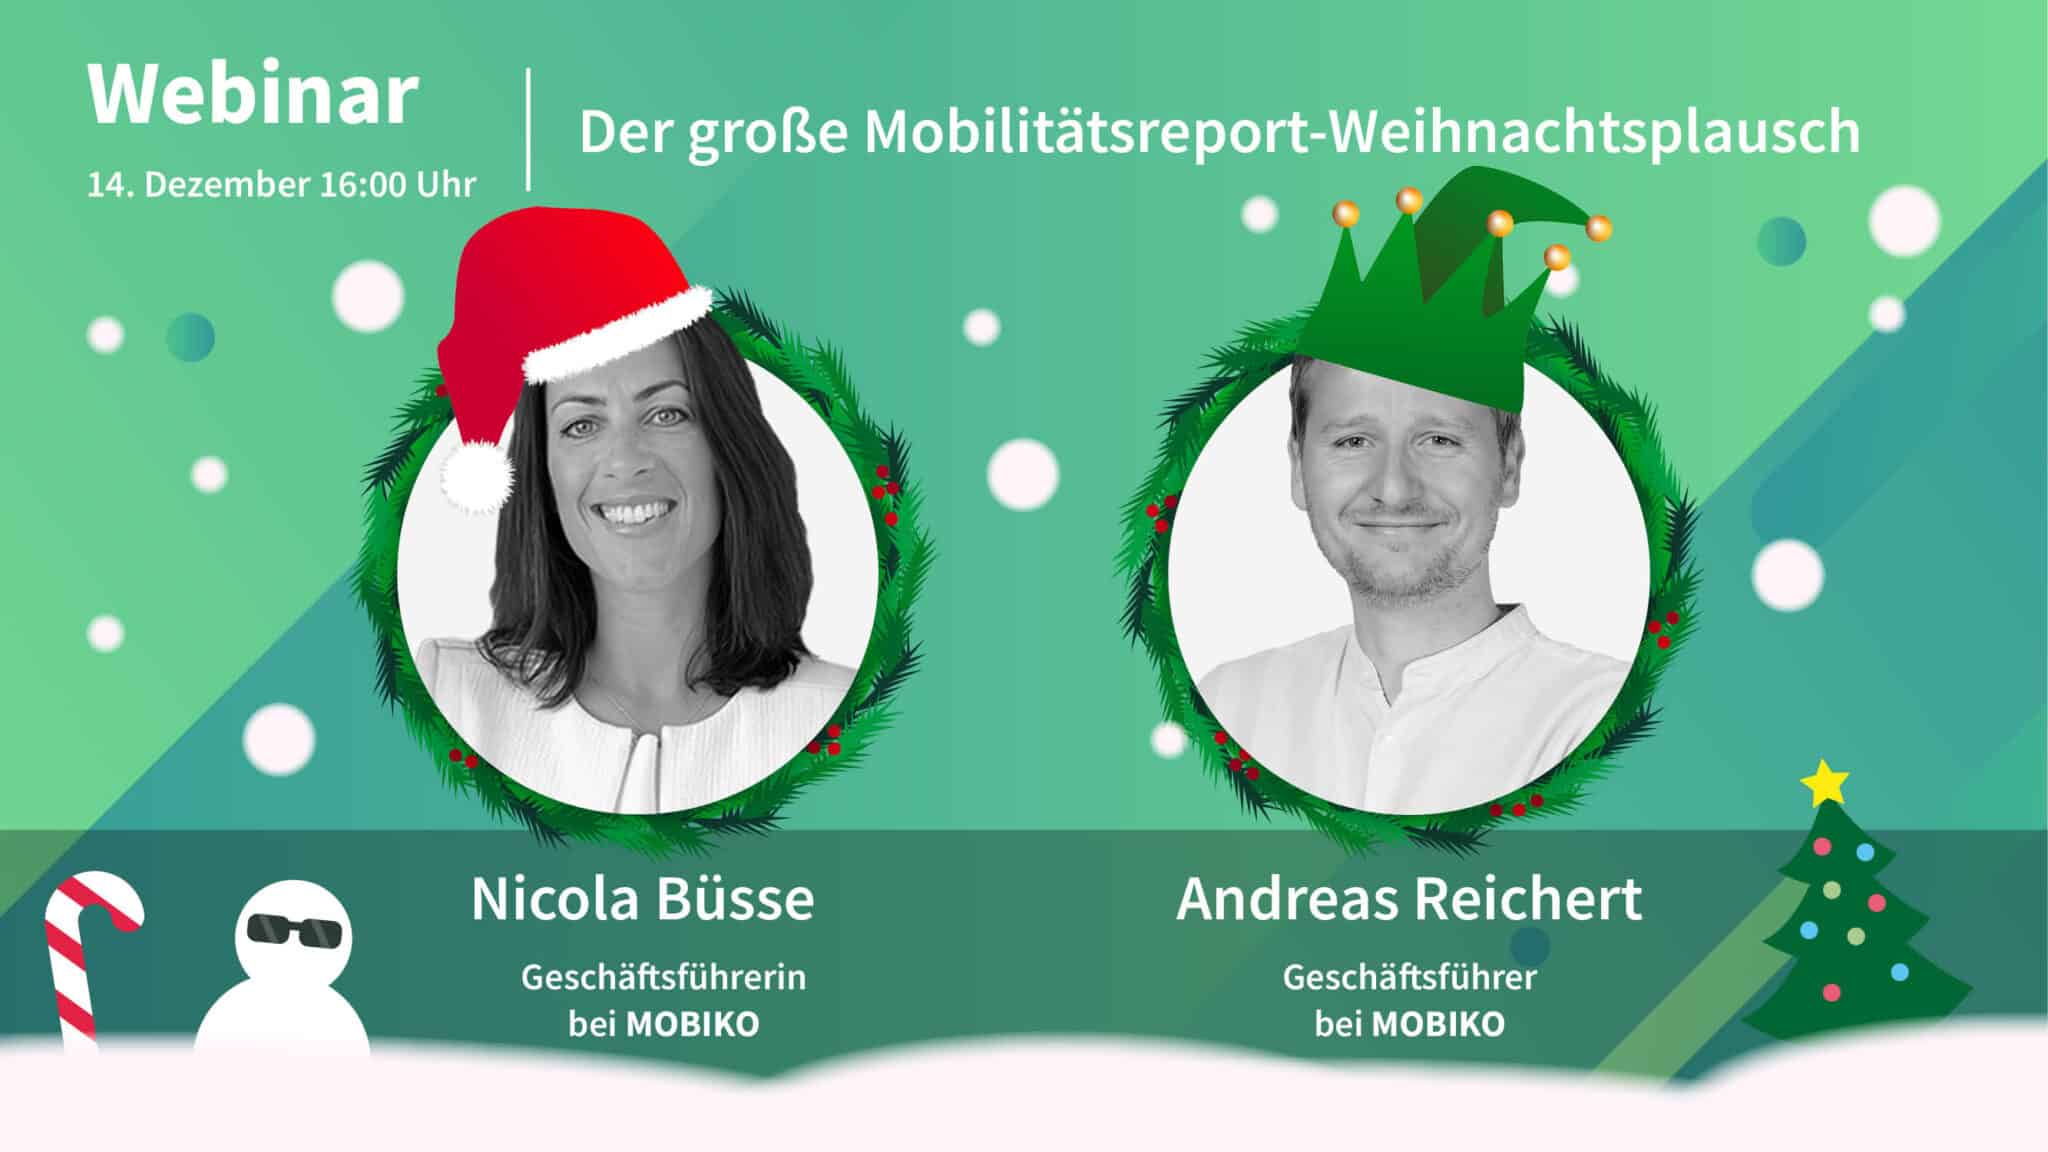 Webinar von MOBIKO zum Thema "Der große Mobilitätsreport-Weihnachtsplausch" am Donnerstag, 14. Dezember um 16 Uhr mit Nicola Büsse und Andreas Reichert von der MOBIKO Geschäftsführung